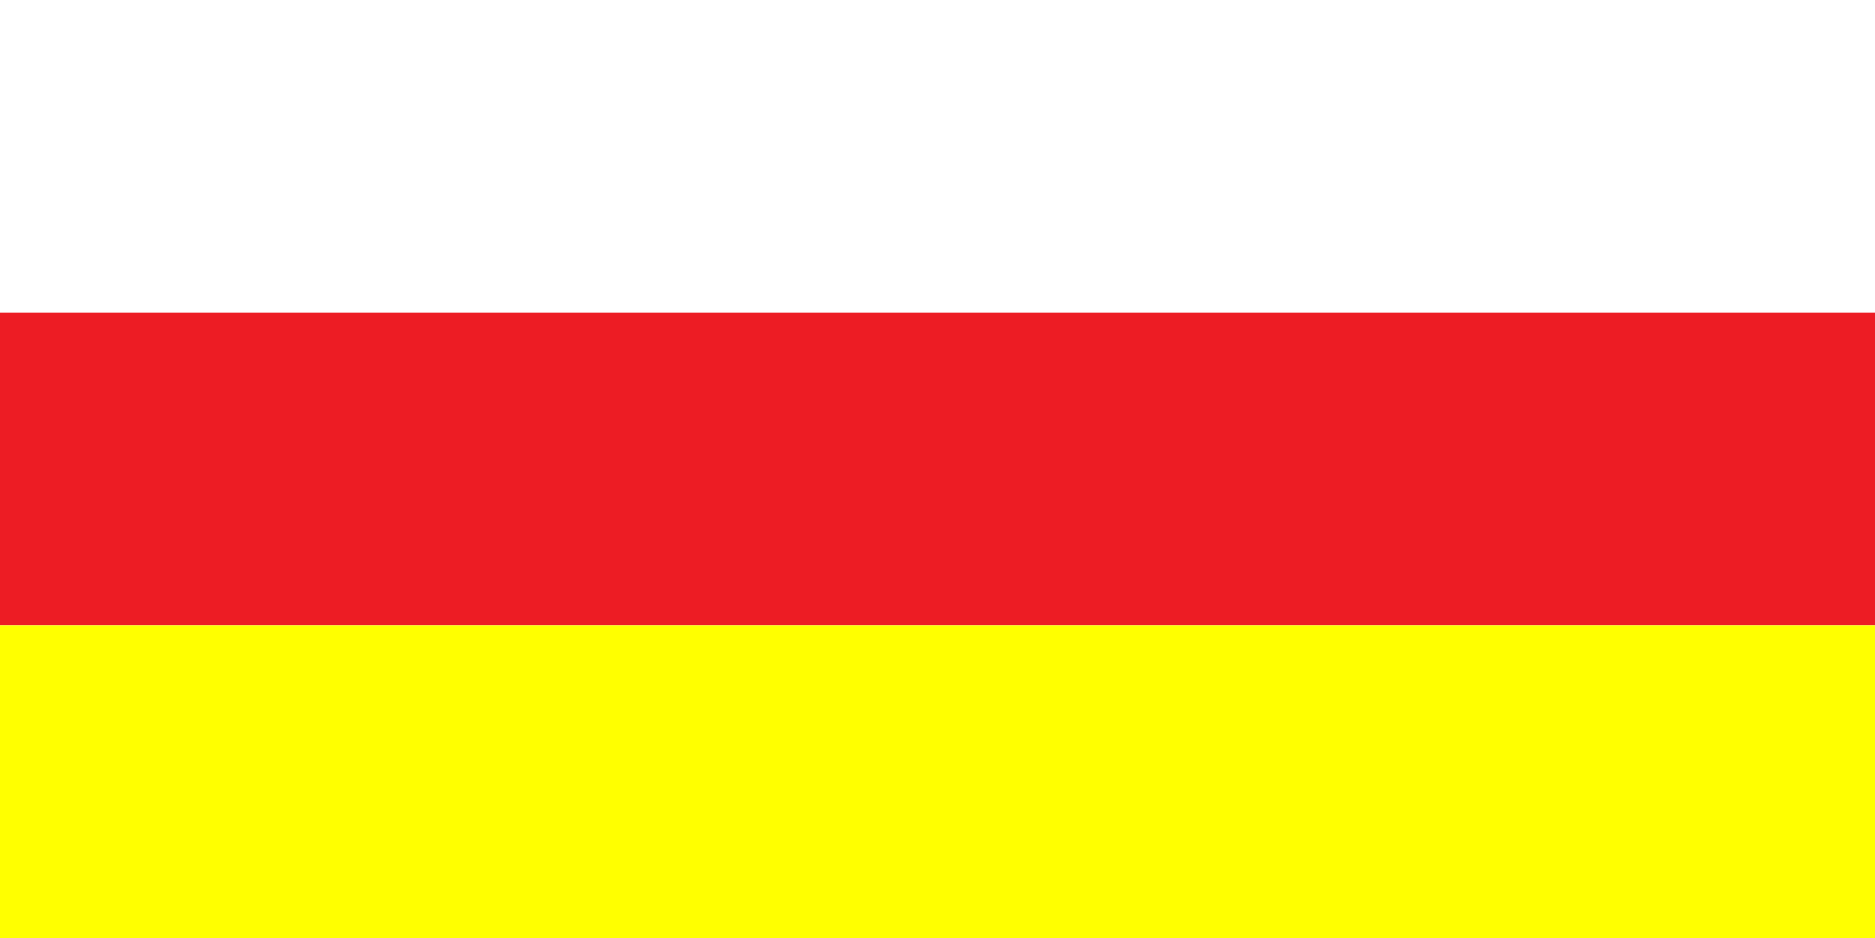 Flag of North Ossetia